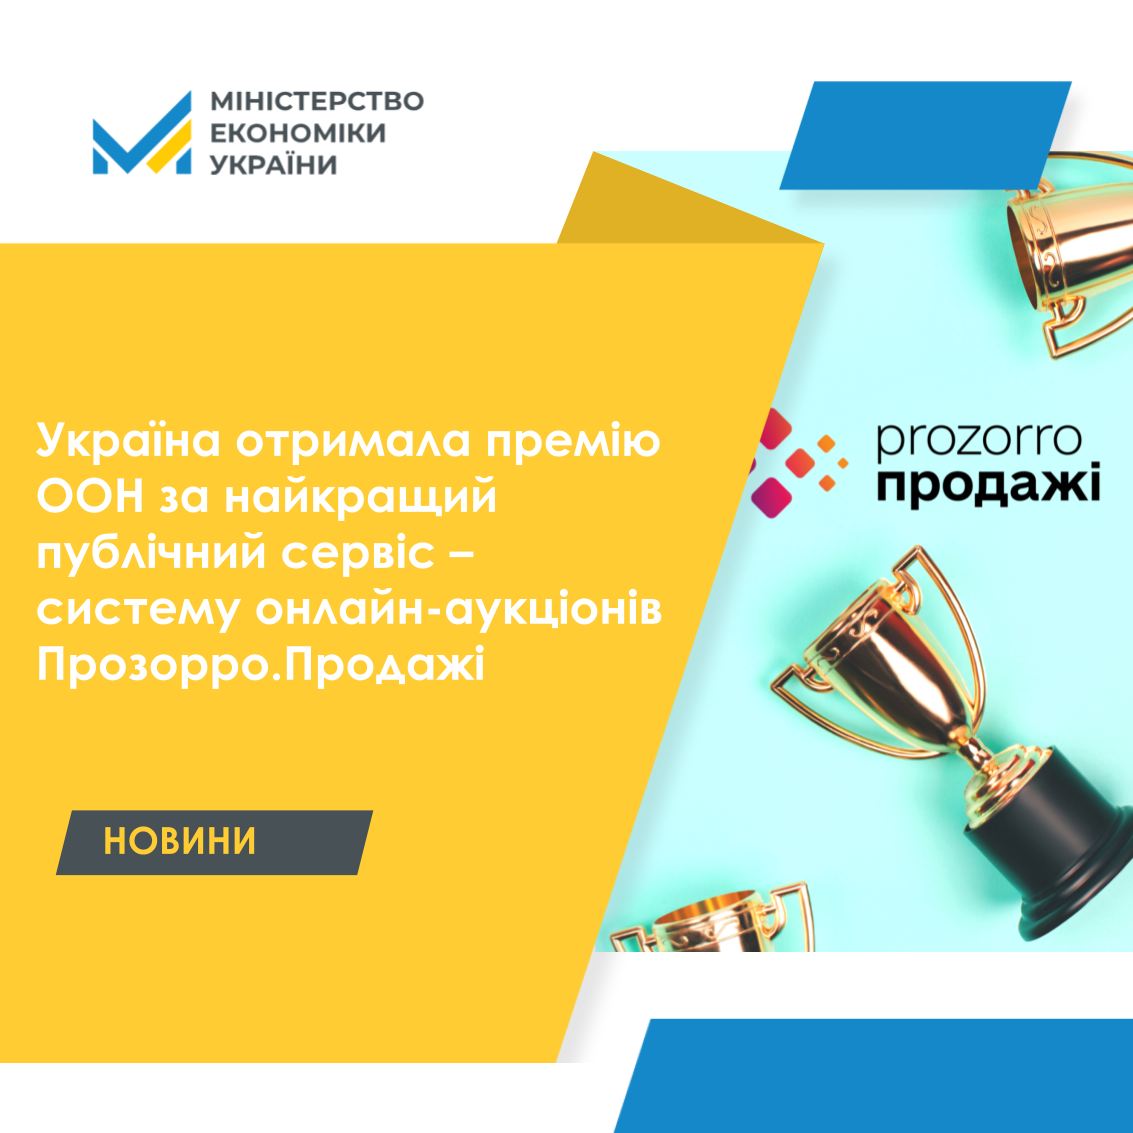 Україна отримала премію ООН за найкращий публічний сервіс – систему онлайн-аукціонів Прозорро.Продажі